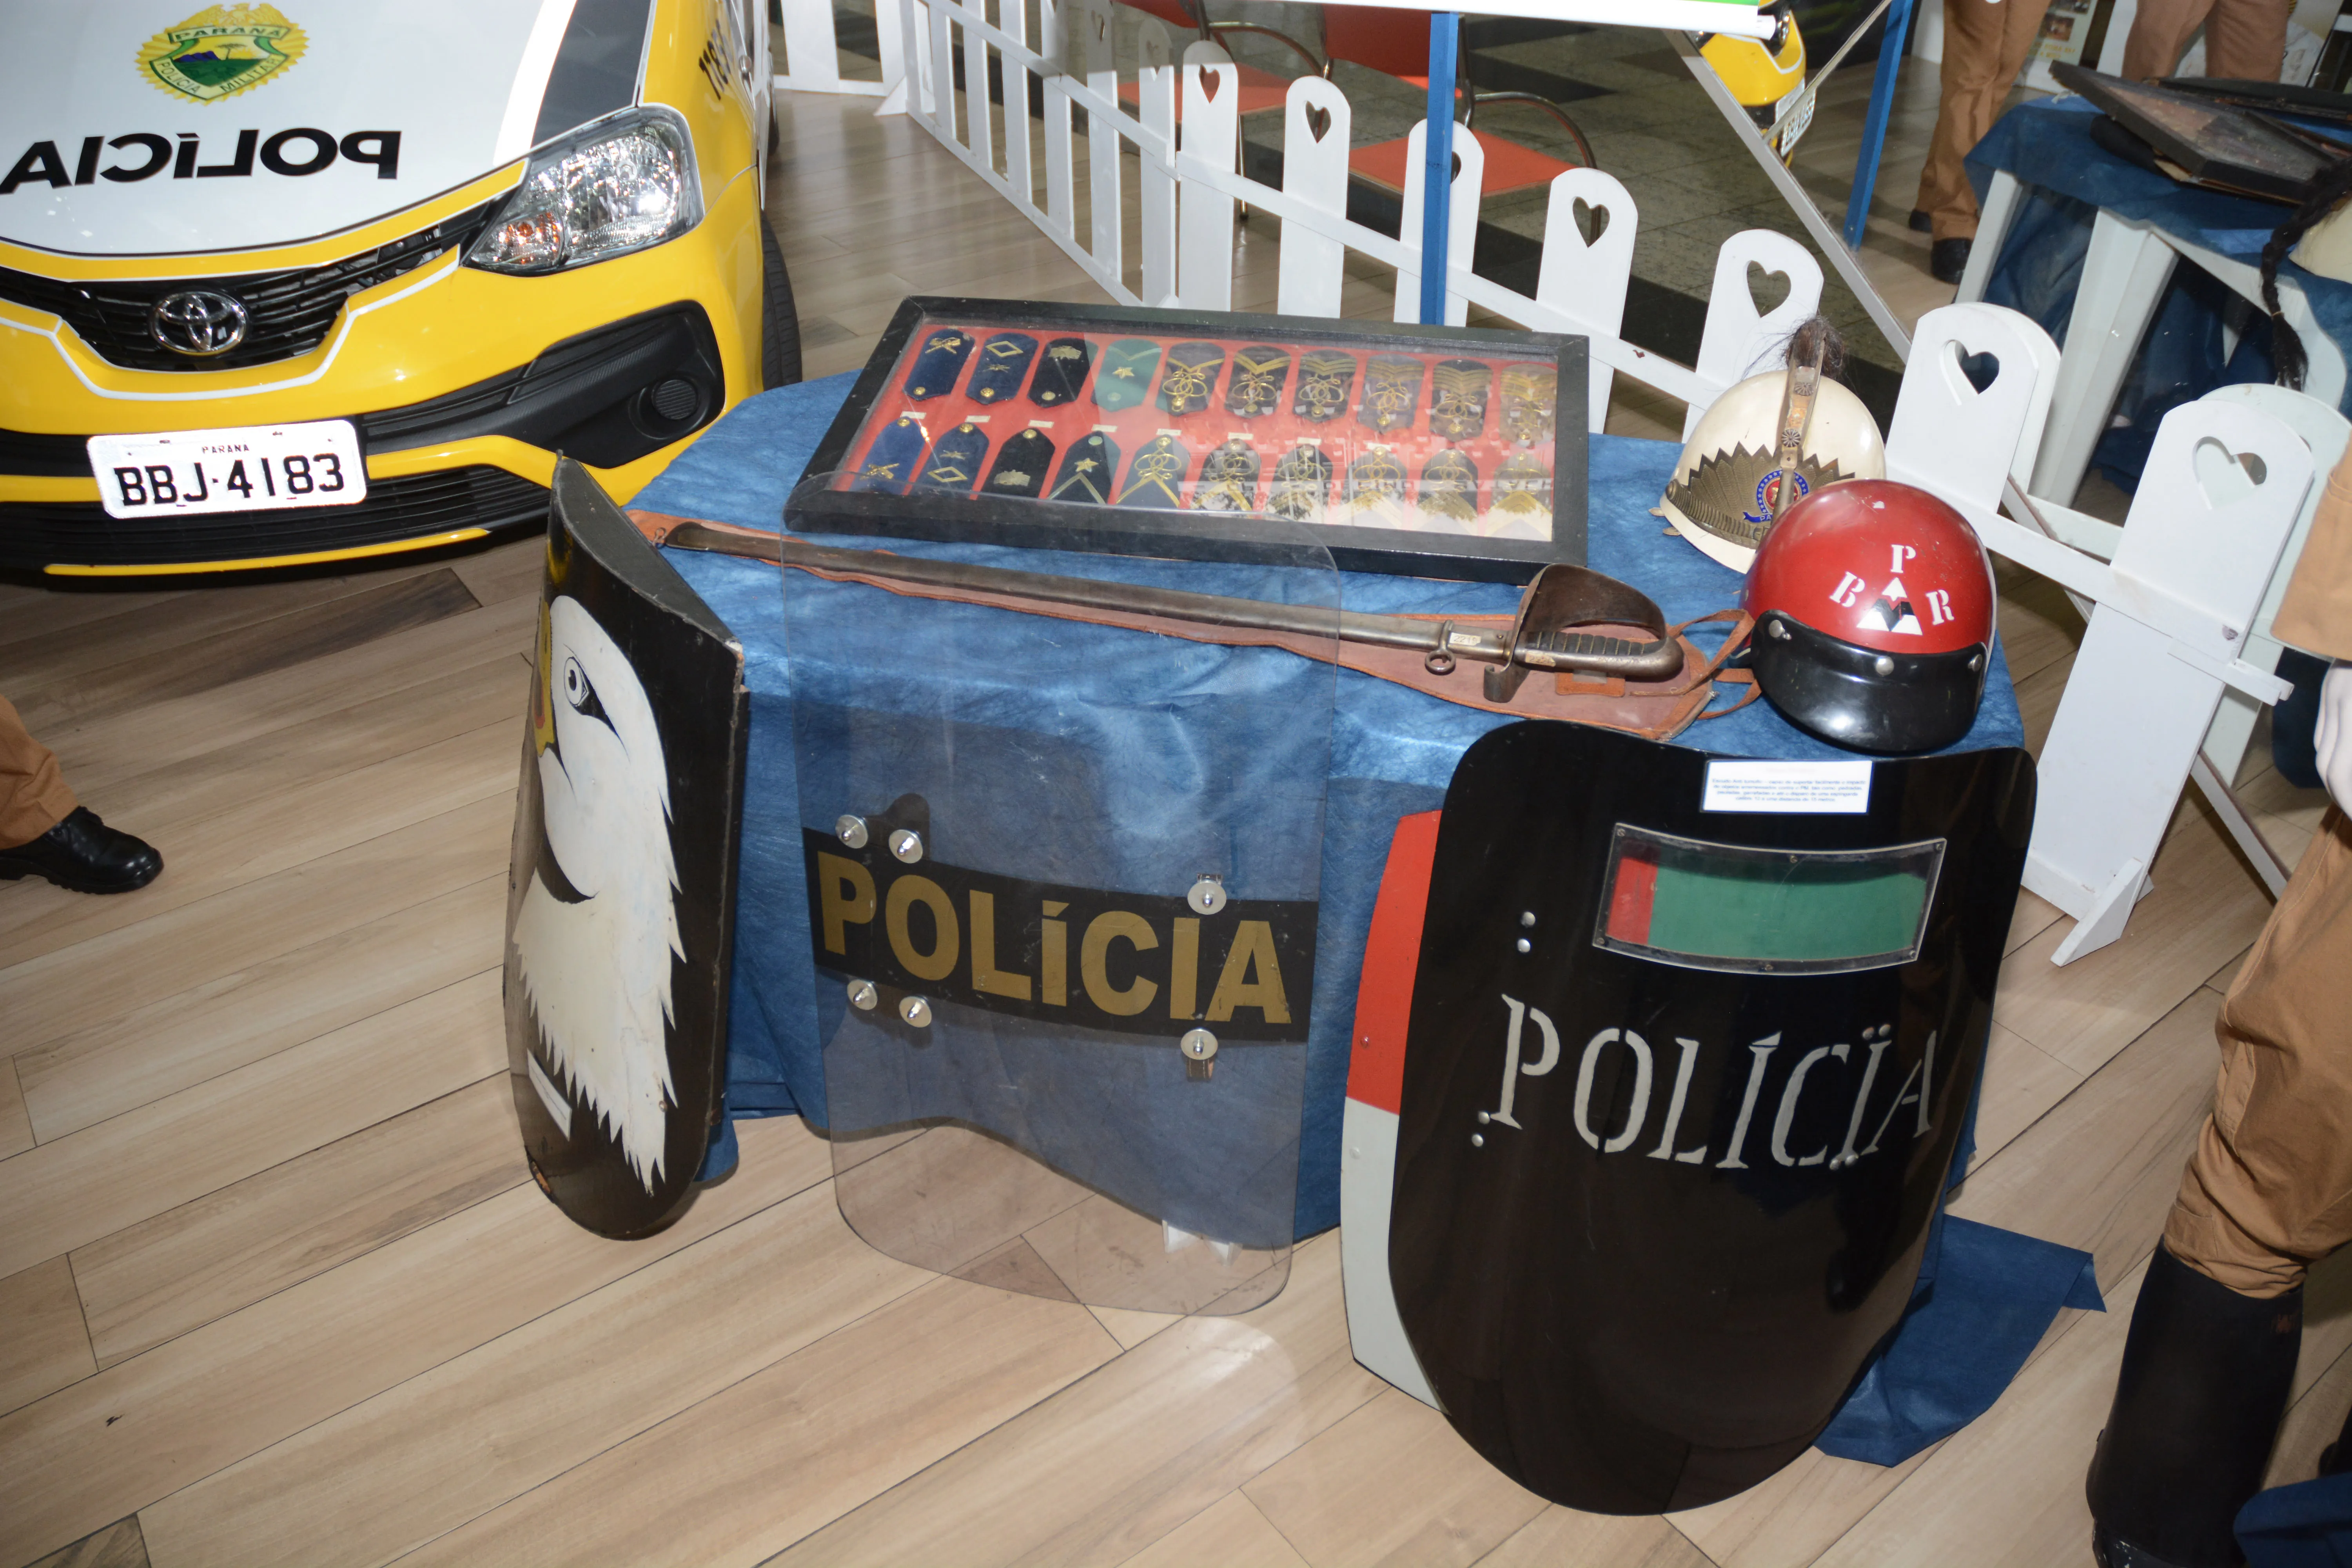 Polícia Militar faz exposição no Shopping CentroNorte em Apucarana